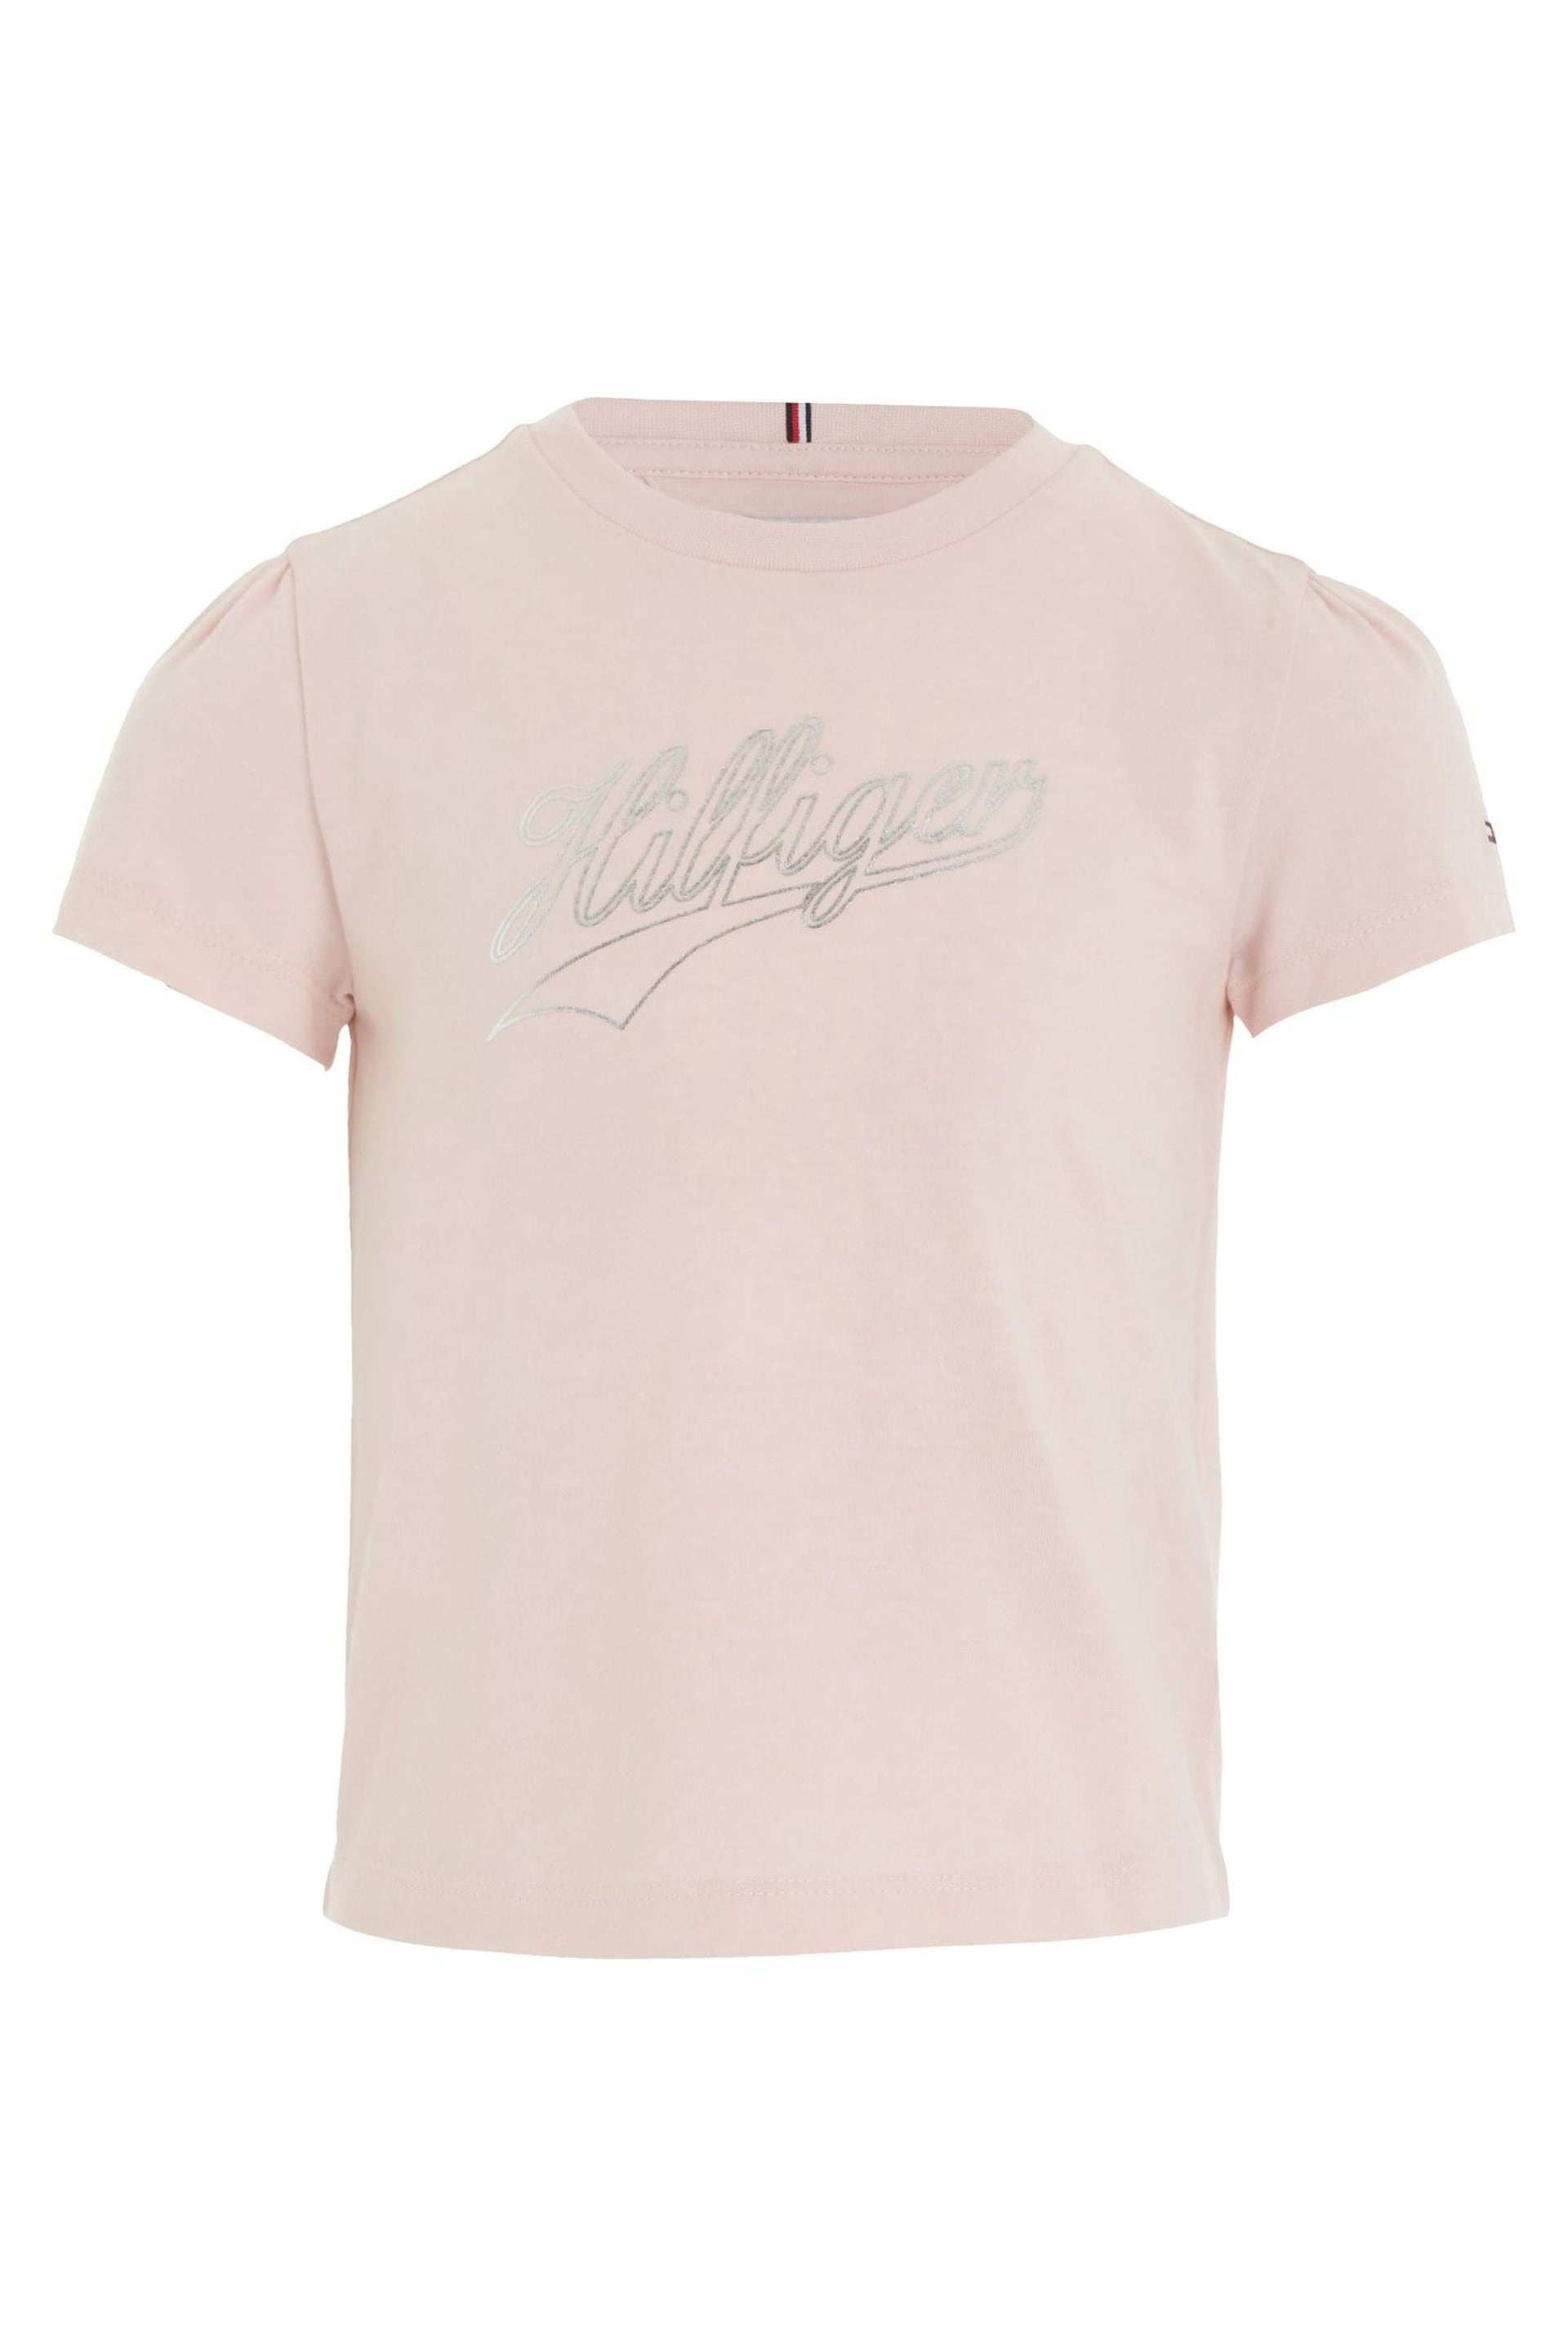 Tommy Hilfiger Pink Hilfiger Script T-Shirt - Image 1 of 3